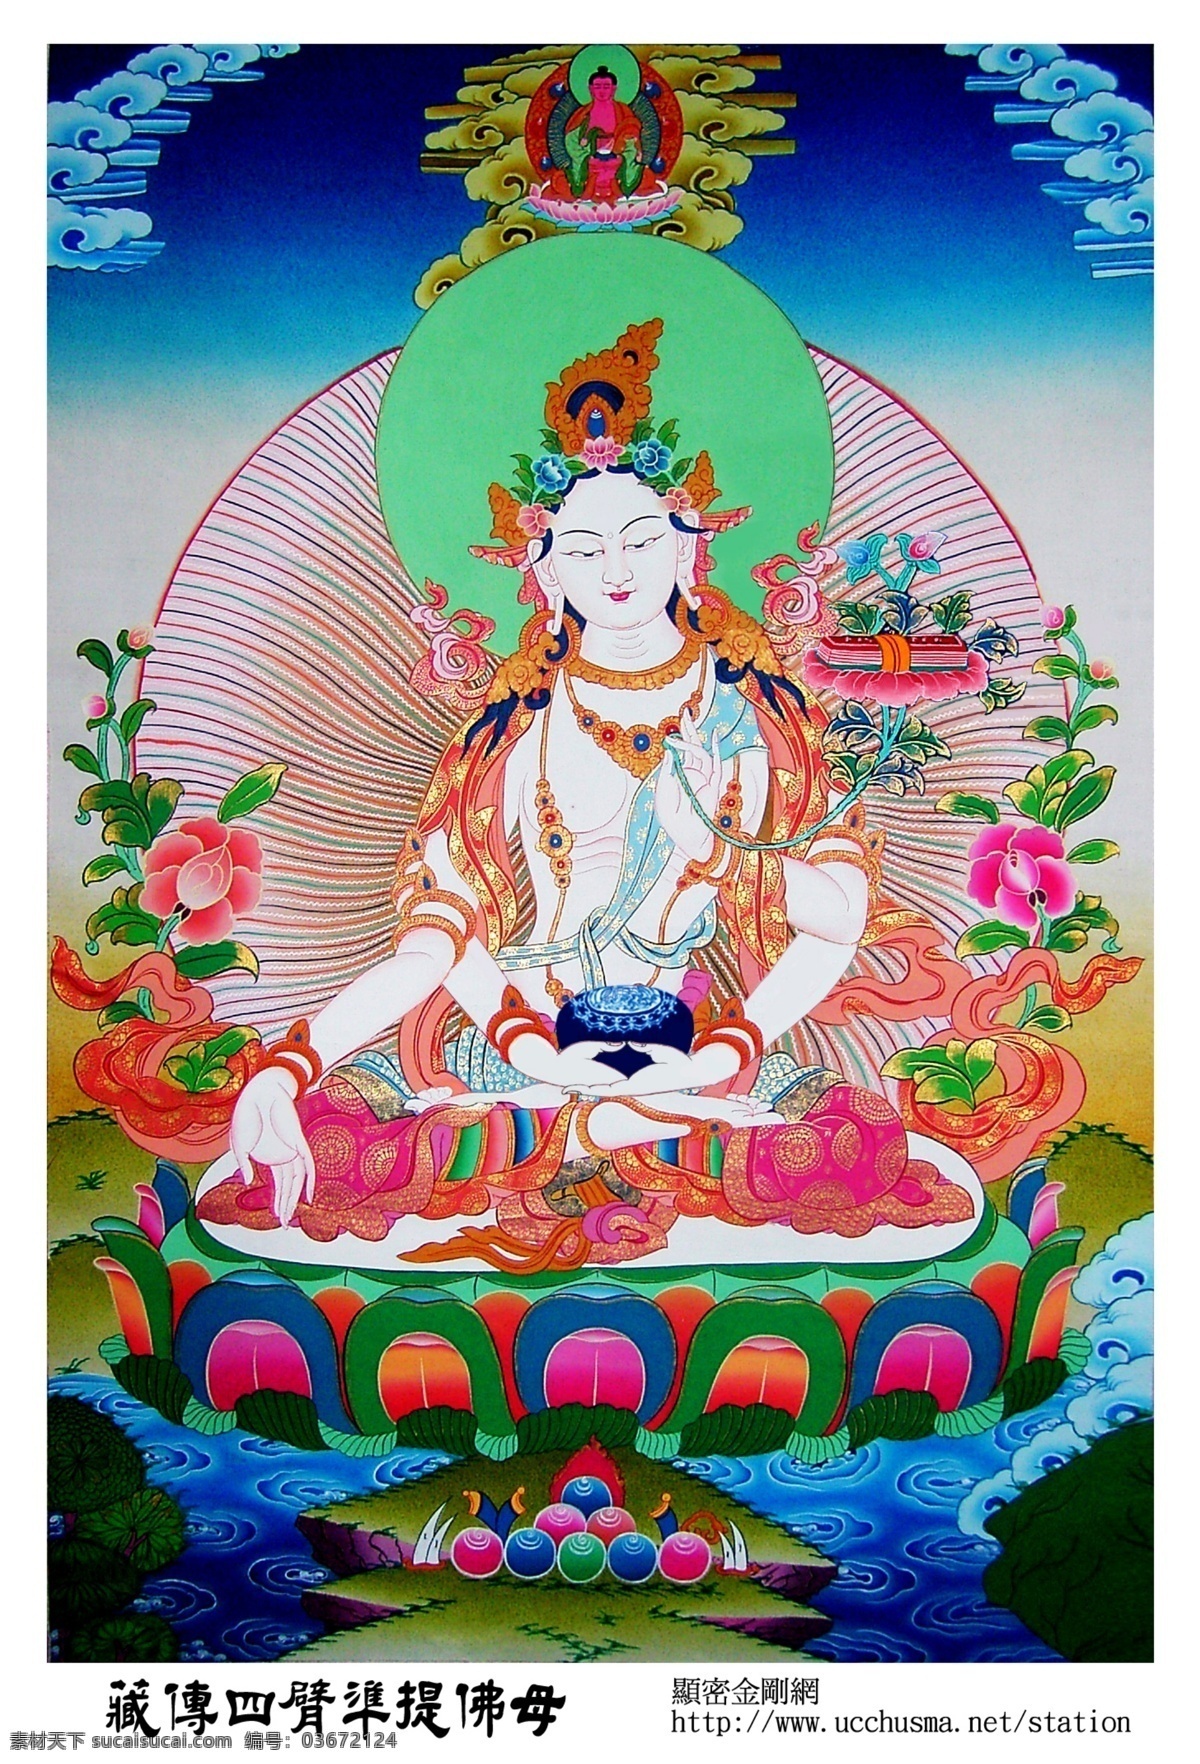 藏传 四 臂 准 提 佛 母 佛菩萨像 准提佛母 准提菩萨 七俱胝准提 藏传准提佛母 文化艺术 宗教信仰